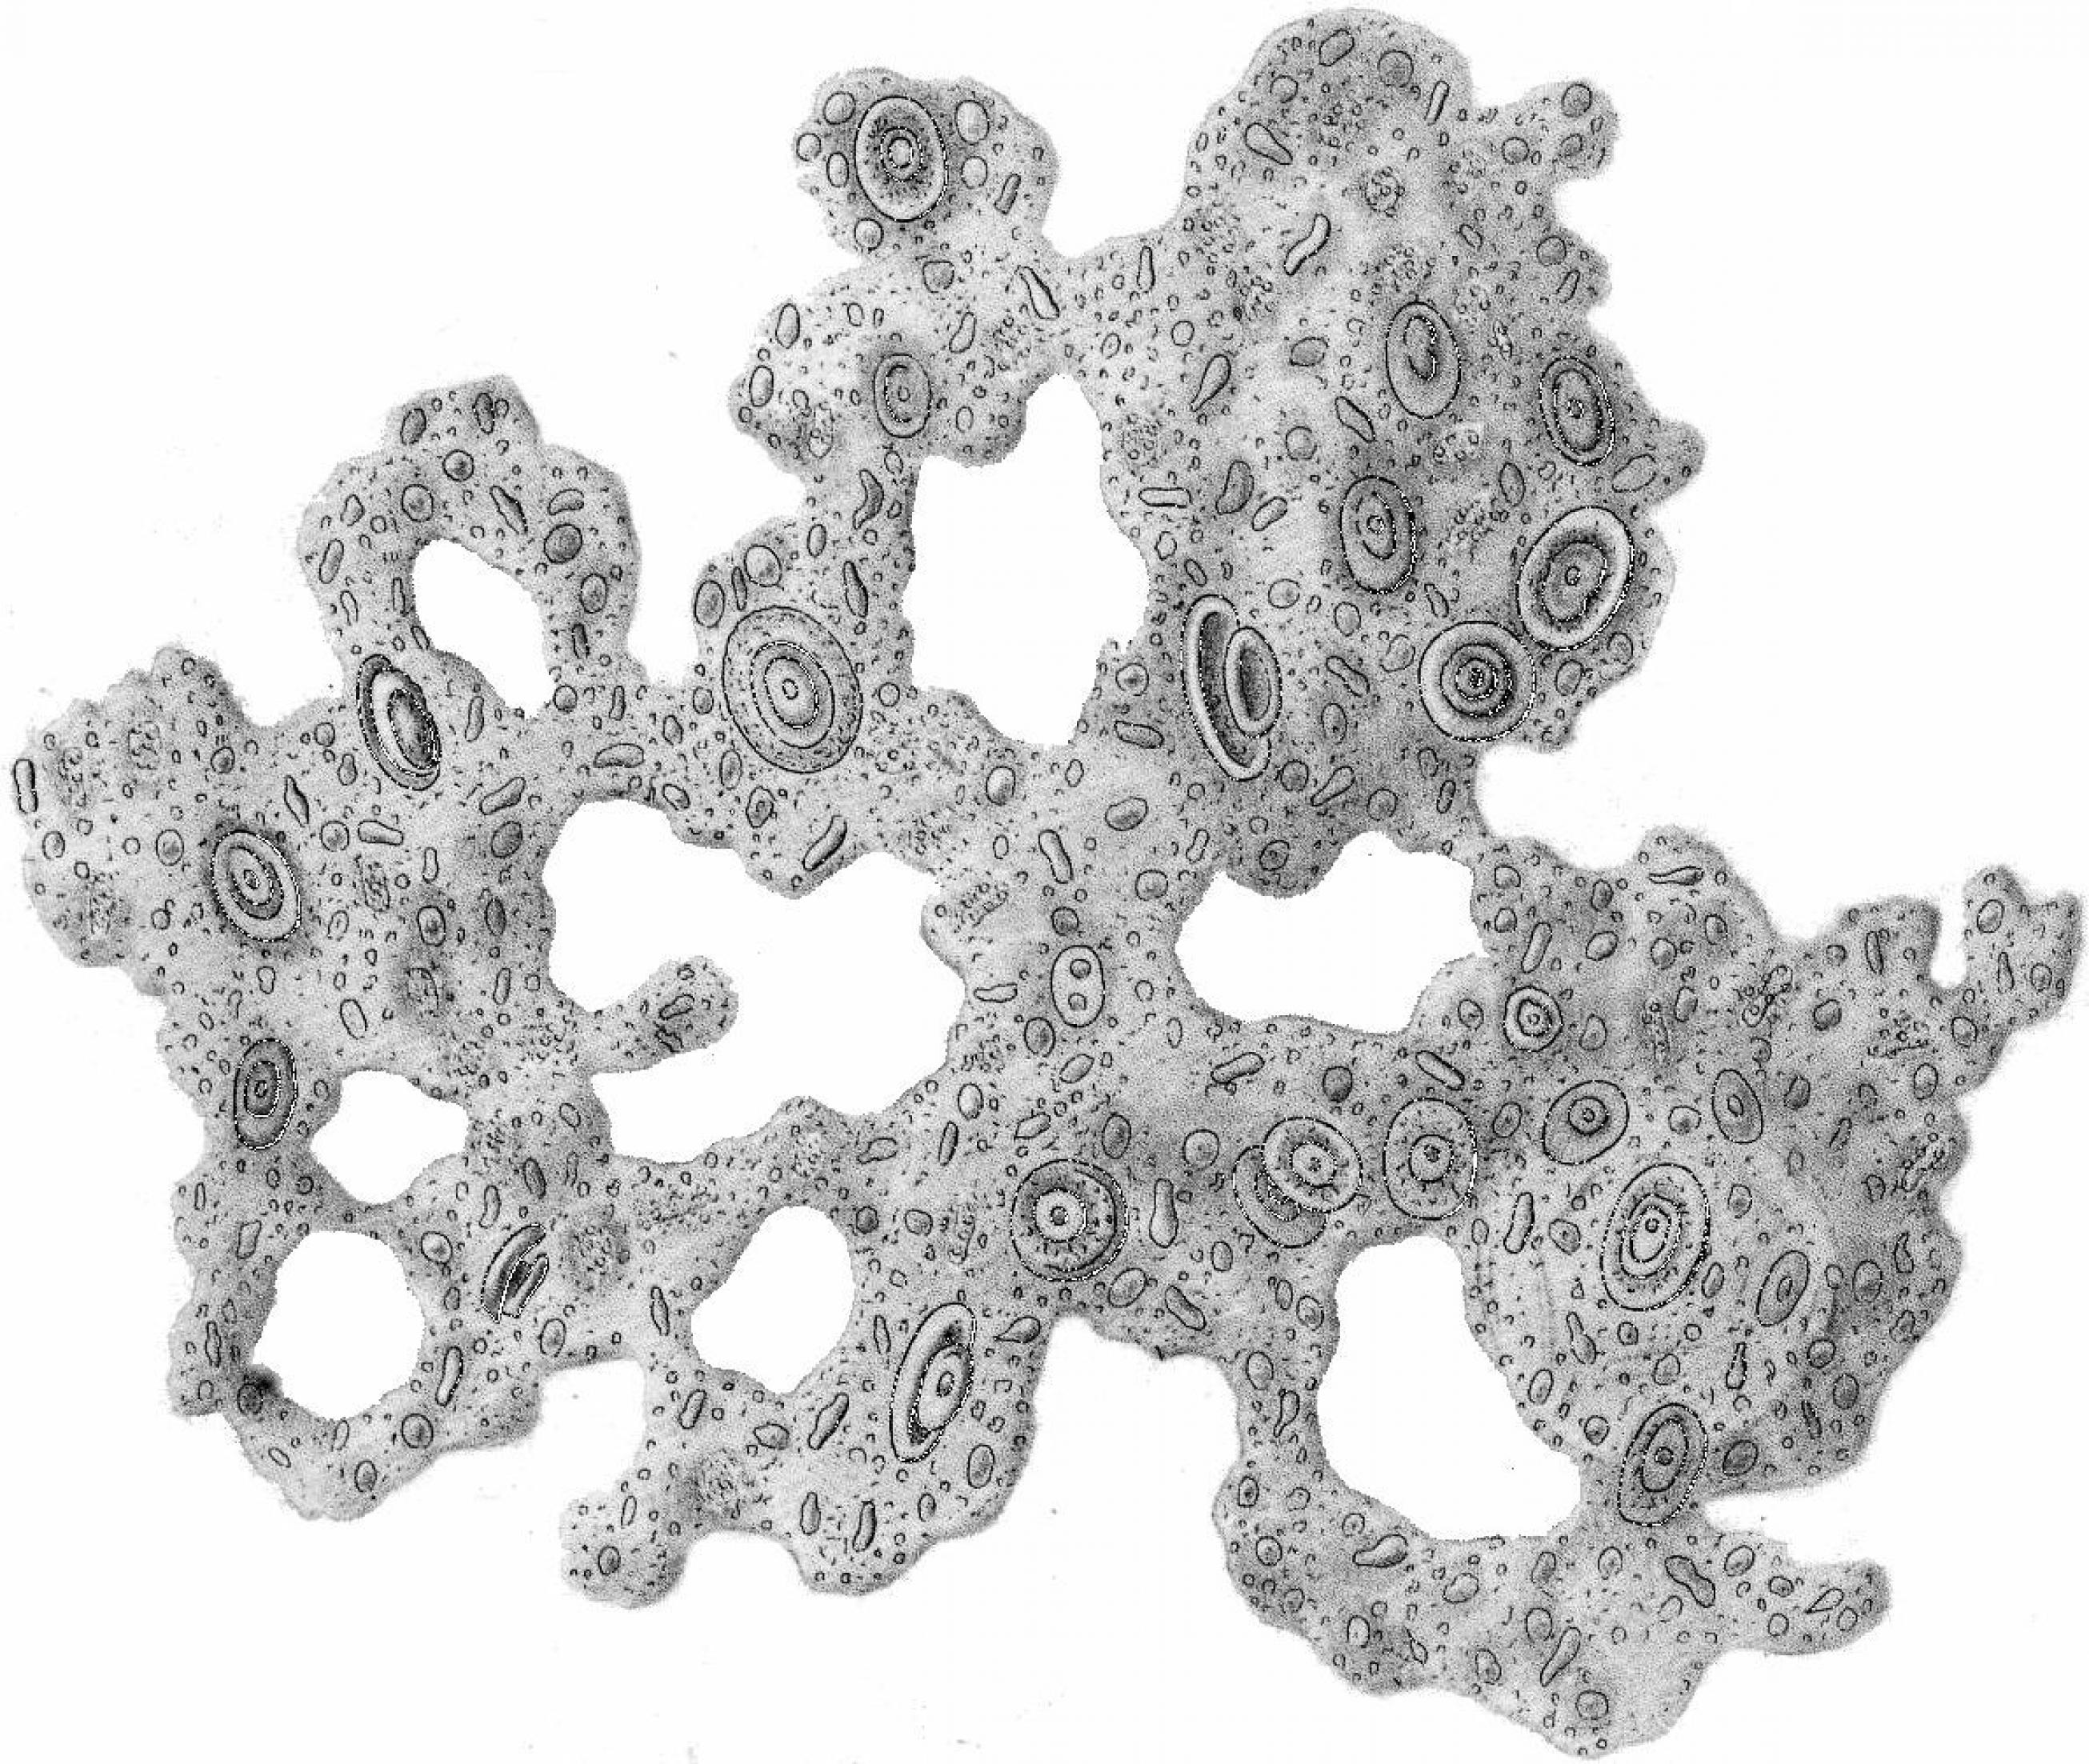 Ernst Haeckel skizziert Urschleim mit Resten seiner letzten Mahlzeit